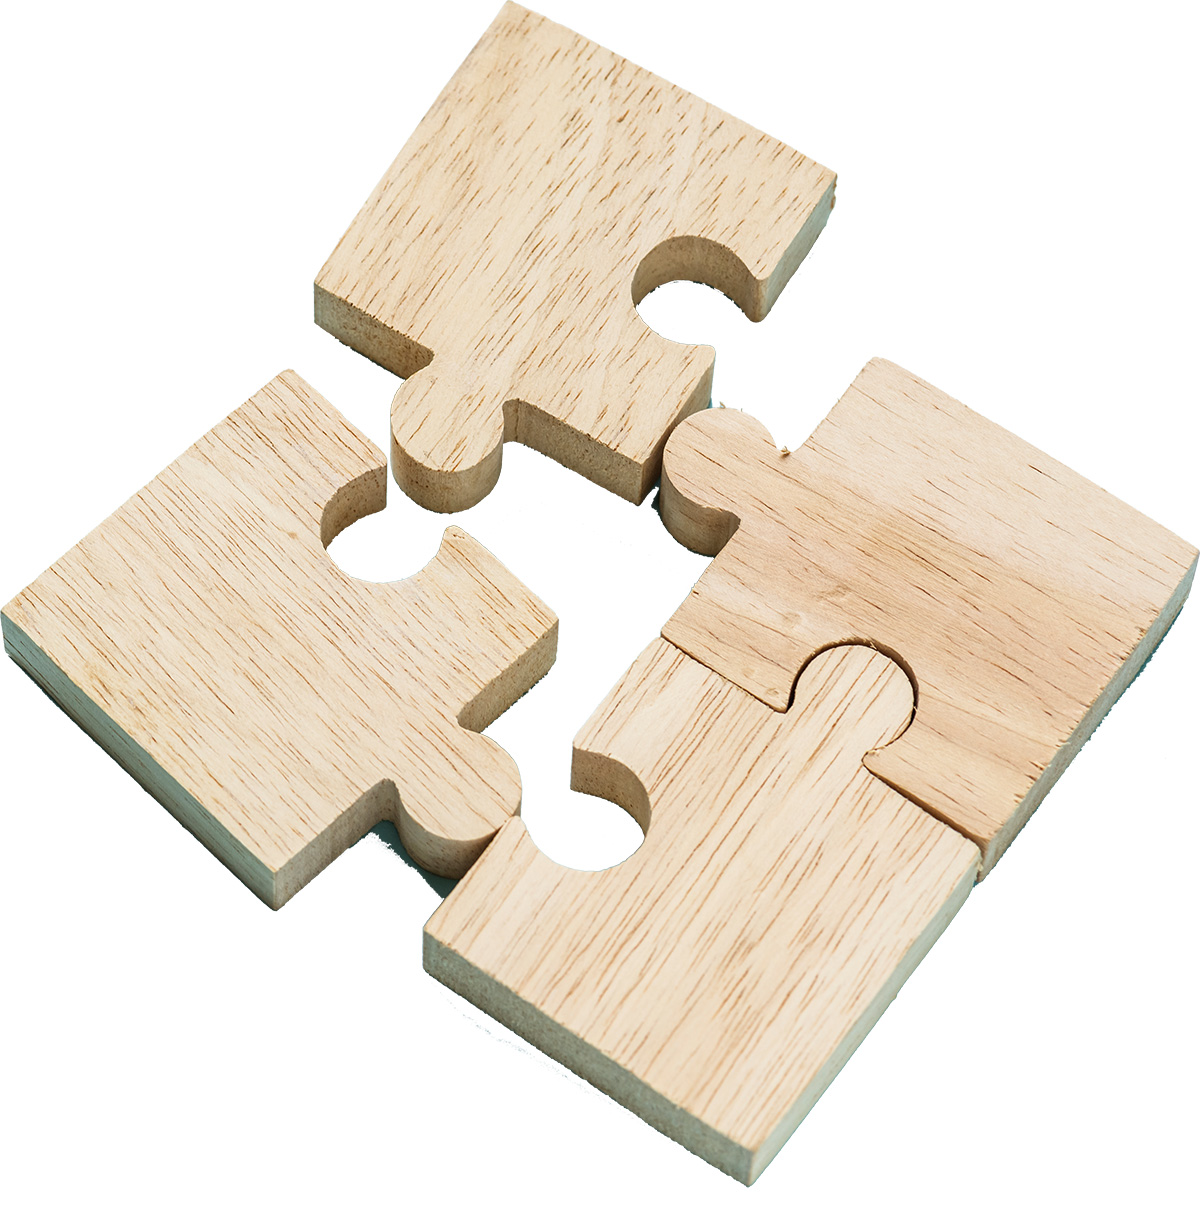 4 Puzzleteile aus Holz